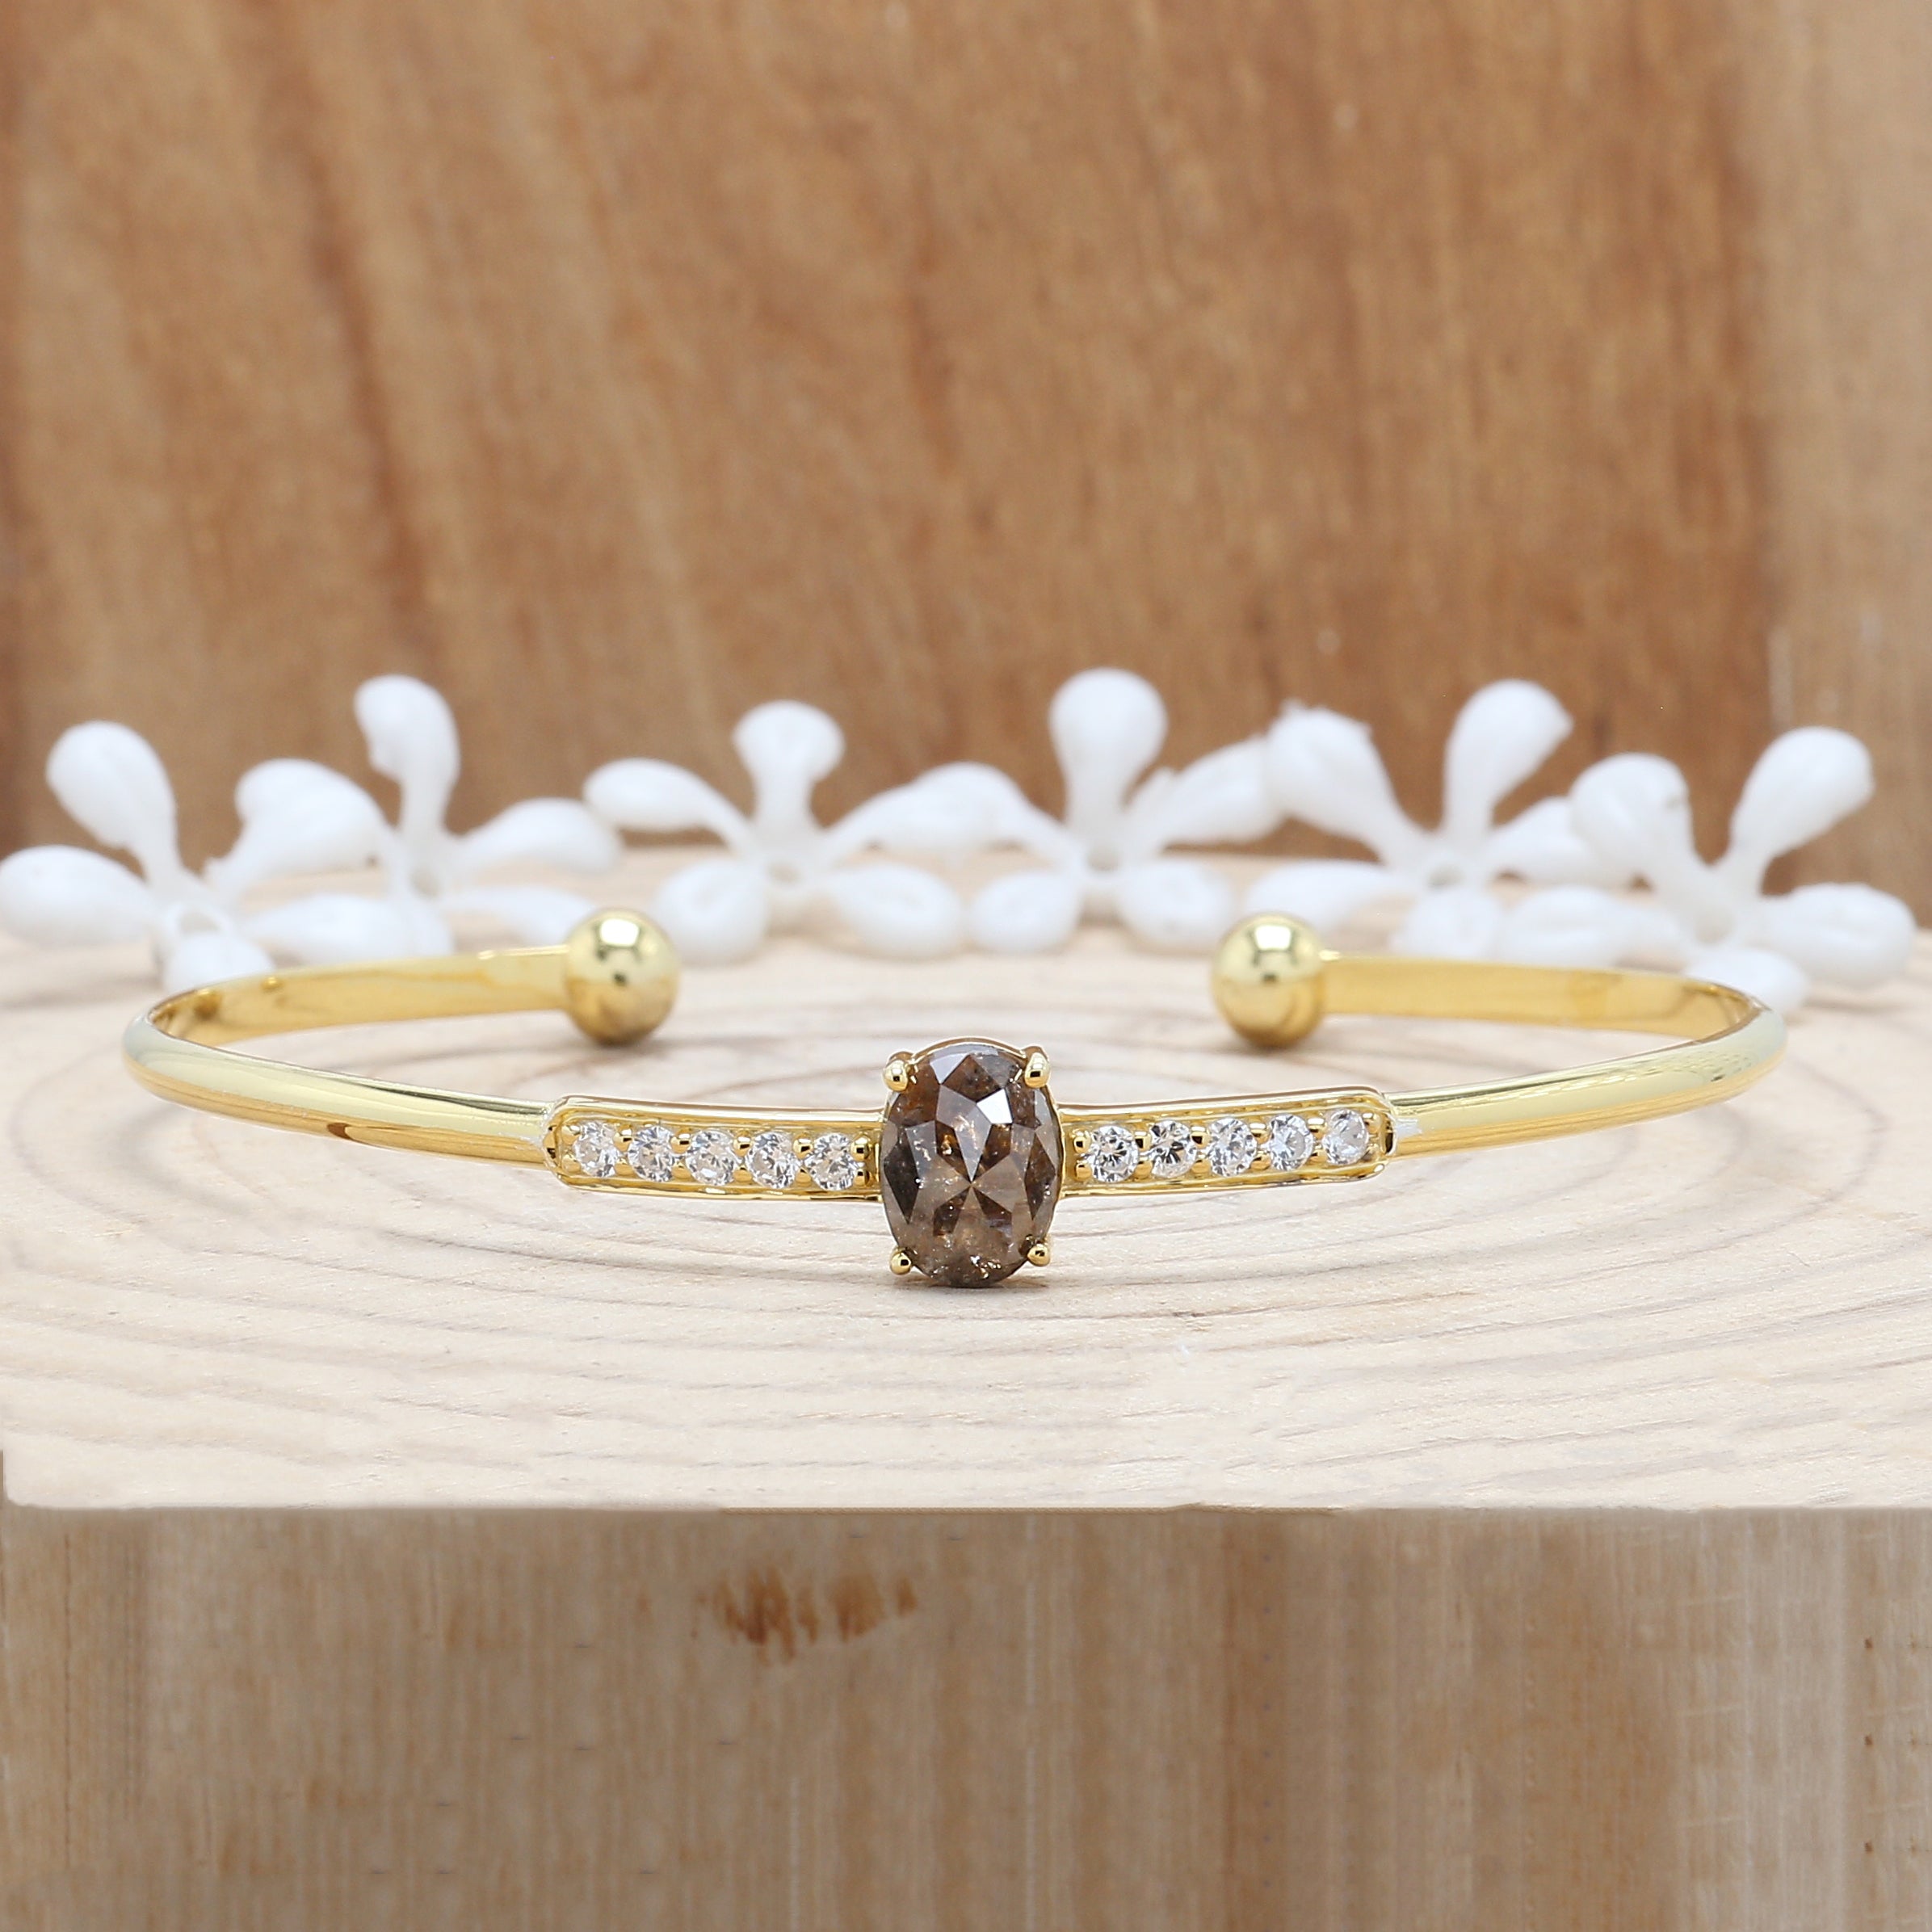 1.59 CT Bracelet, Cuff Bracelet, Oval Diamond Bracelet, Round Diamond Bracelet, Oval Bracelet, Anniversary Gift, Gift For Her, KDL325